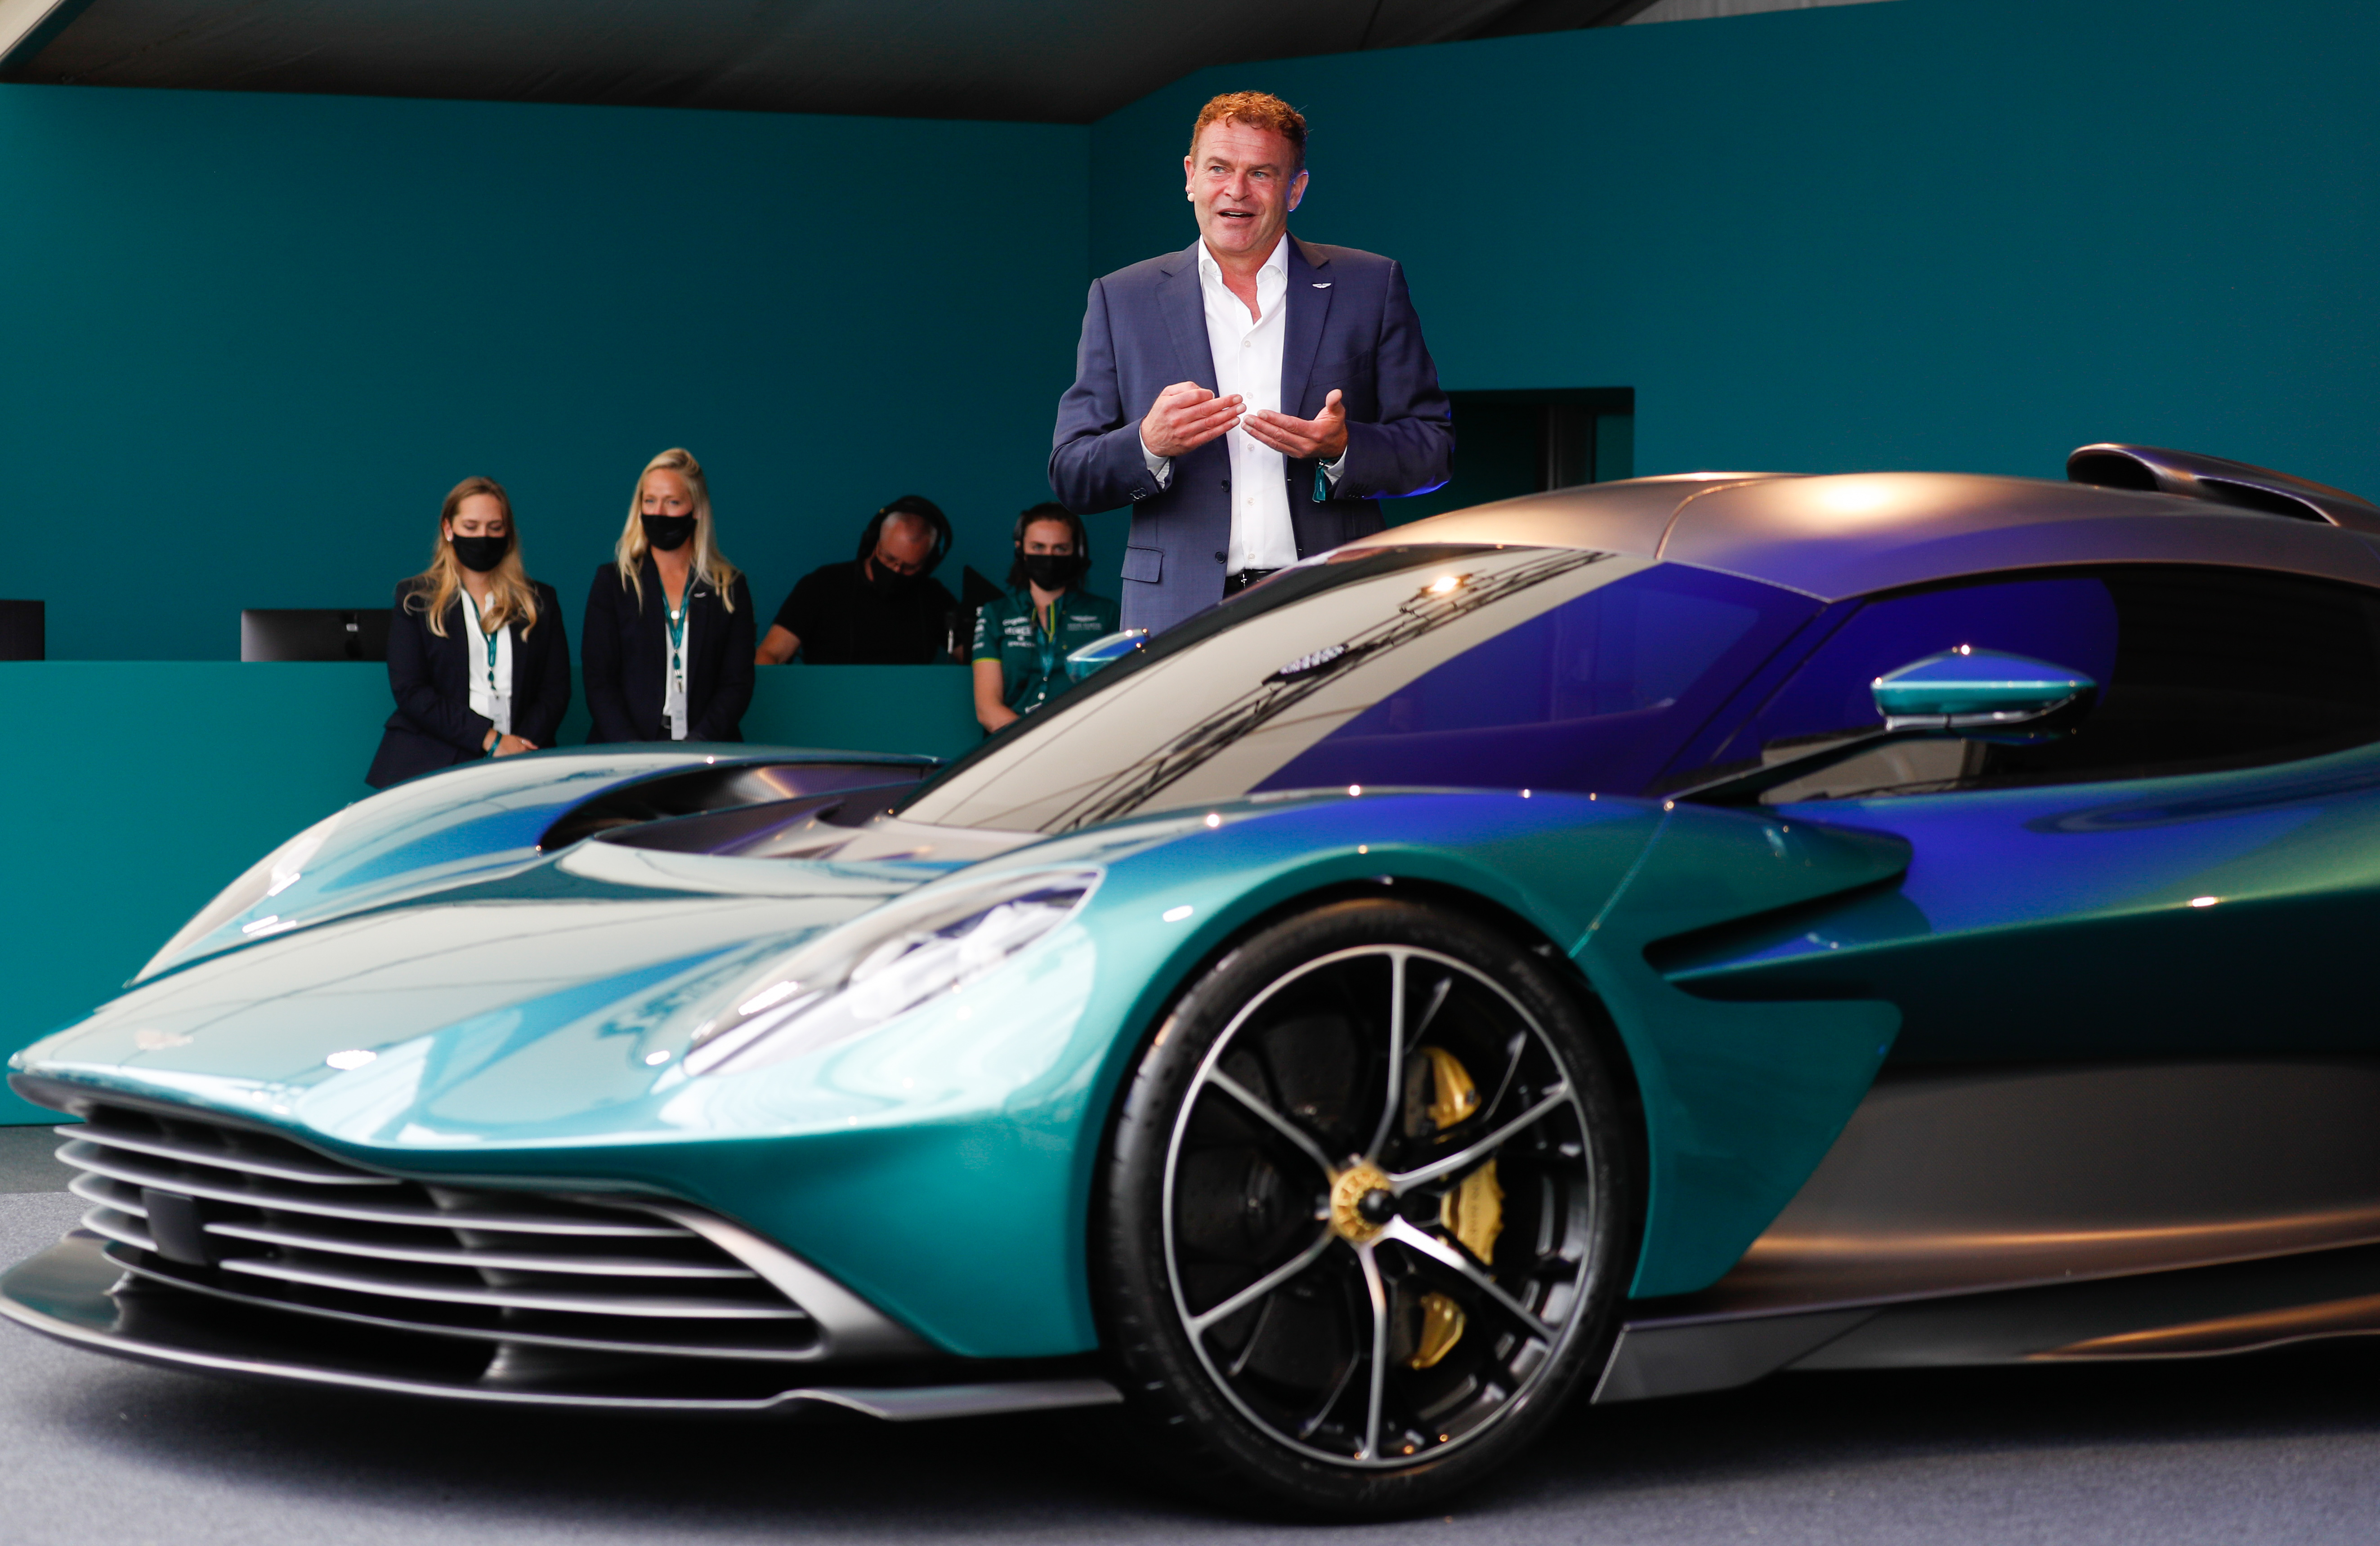 Die Aktien von Aston Martin Lagonda stiegen um 11 Prozent, nachdem bekannt wurde, dass das Unternehmen einen Vertrag unterzeichnet hatte, der es der Produktion seines ersten Elektrofahrzeugs näher bringt